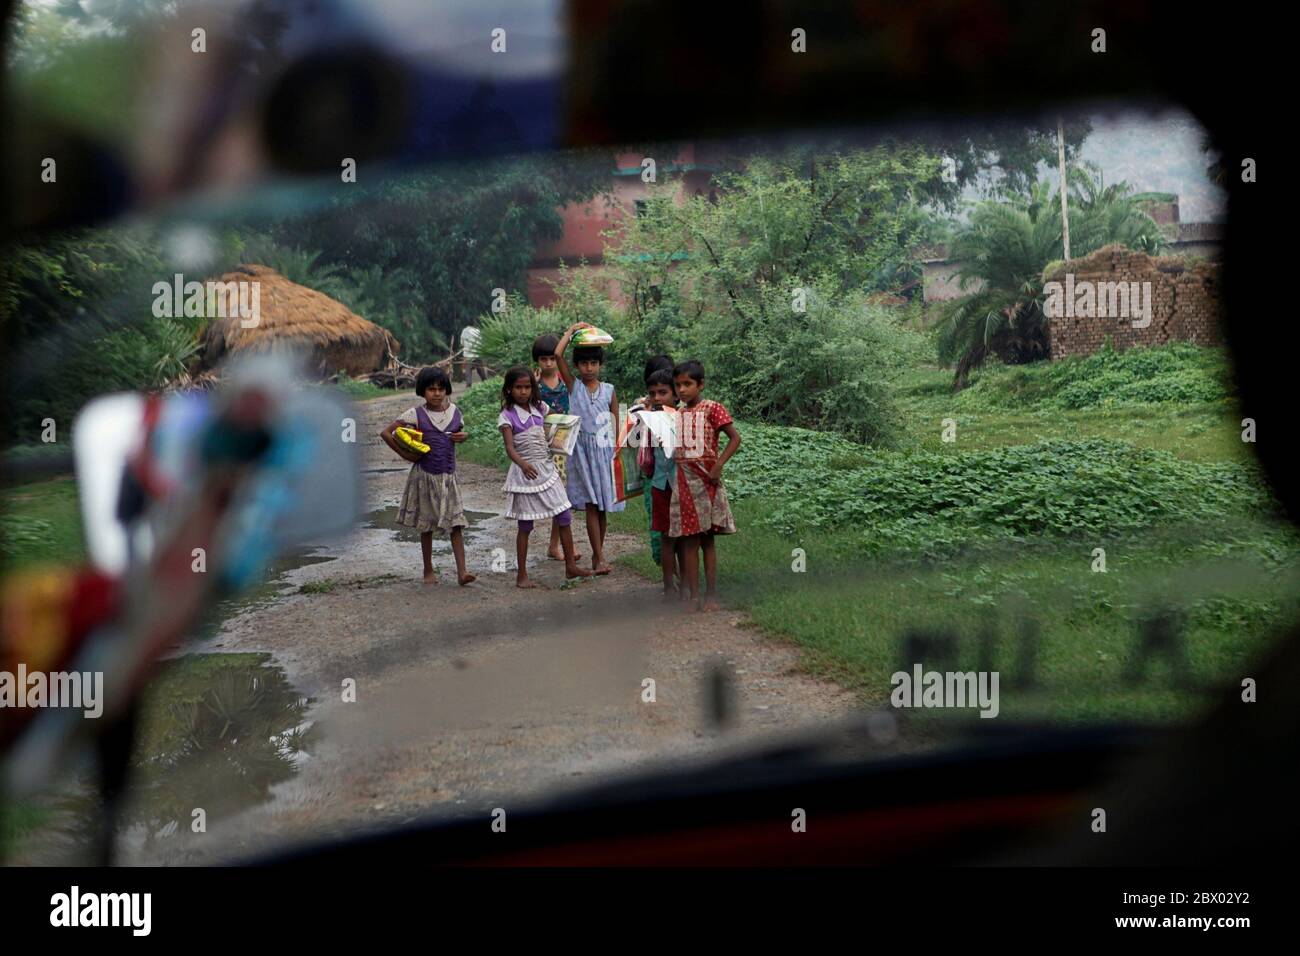 Kinder bereiten sich darauf vor, Platz für eine Autorikshaw zu geben, die auf der Landstraße nach Dungeshwari in Bihar, Indien, unterwegs ist, wo die Join Together Society die Sujata Academy leitet, eine kostenlose Schule und Wohnheime, die als Hilfe für die Ausbildung von Kindern auf dem Land gebaut wurde. Laut UNESCO-Statistiken betrug die Zahl der außerschulischen Kinder in Indien im Jahr 2013 mehr als 2 Millionen (Männer) und fast 1 Millionen (Frauen). Bihar ist einer der ärmsten Bundesstaaten Indiens. Stockfoto